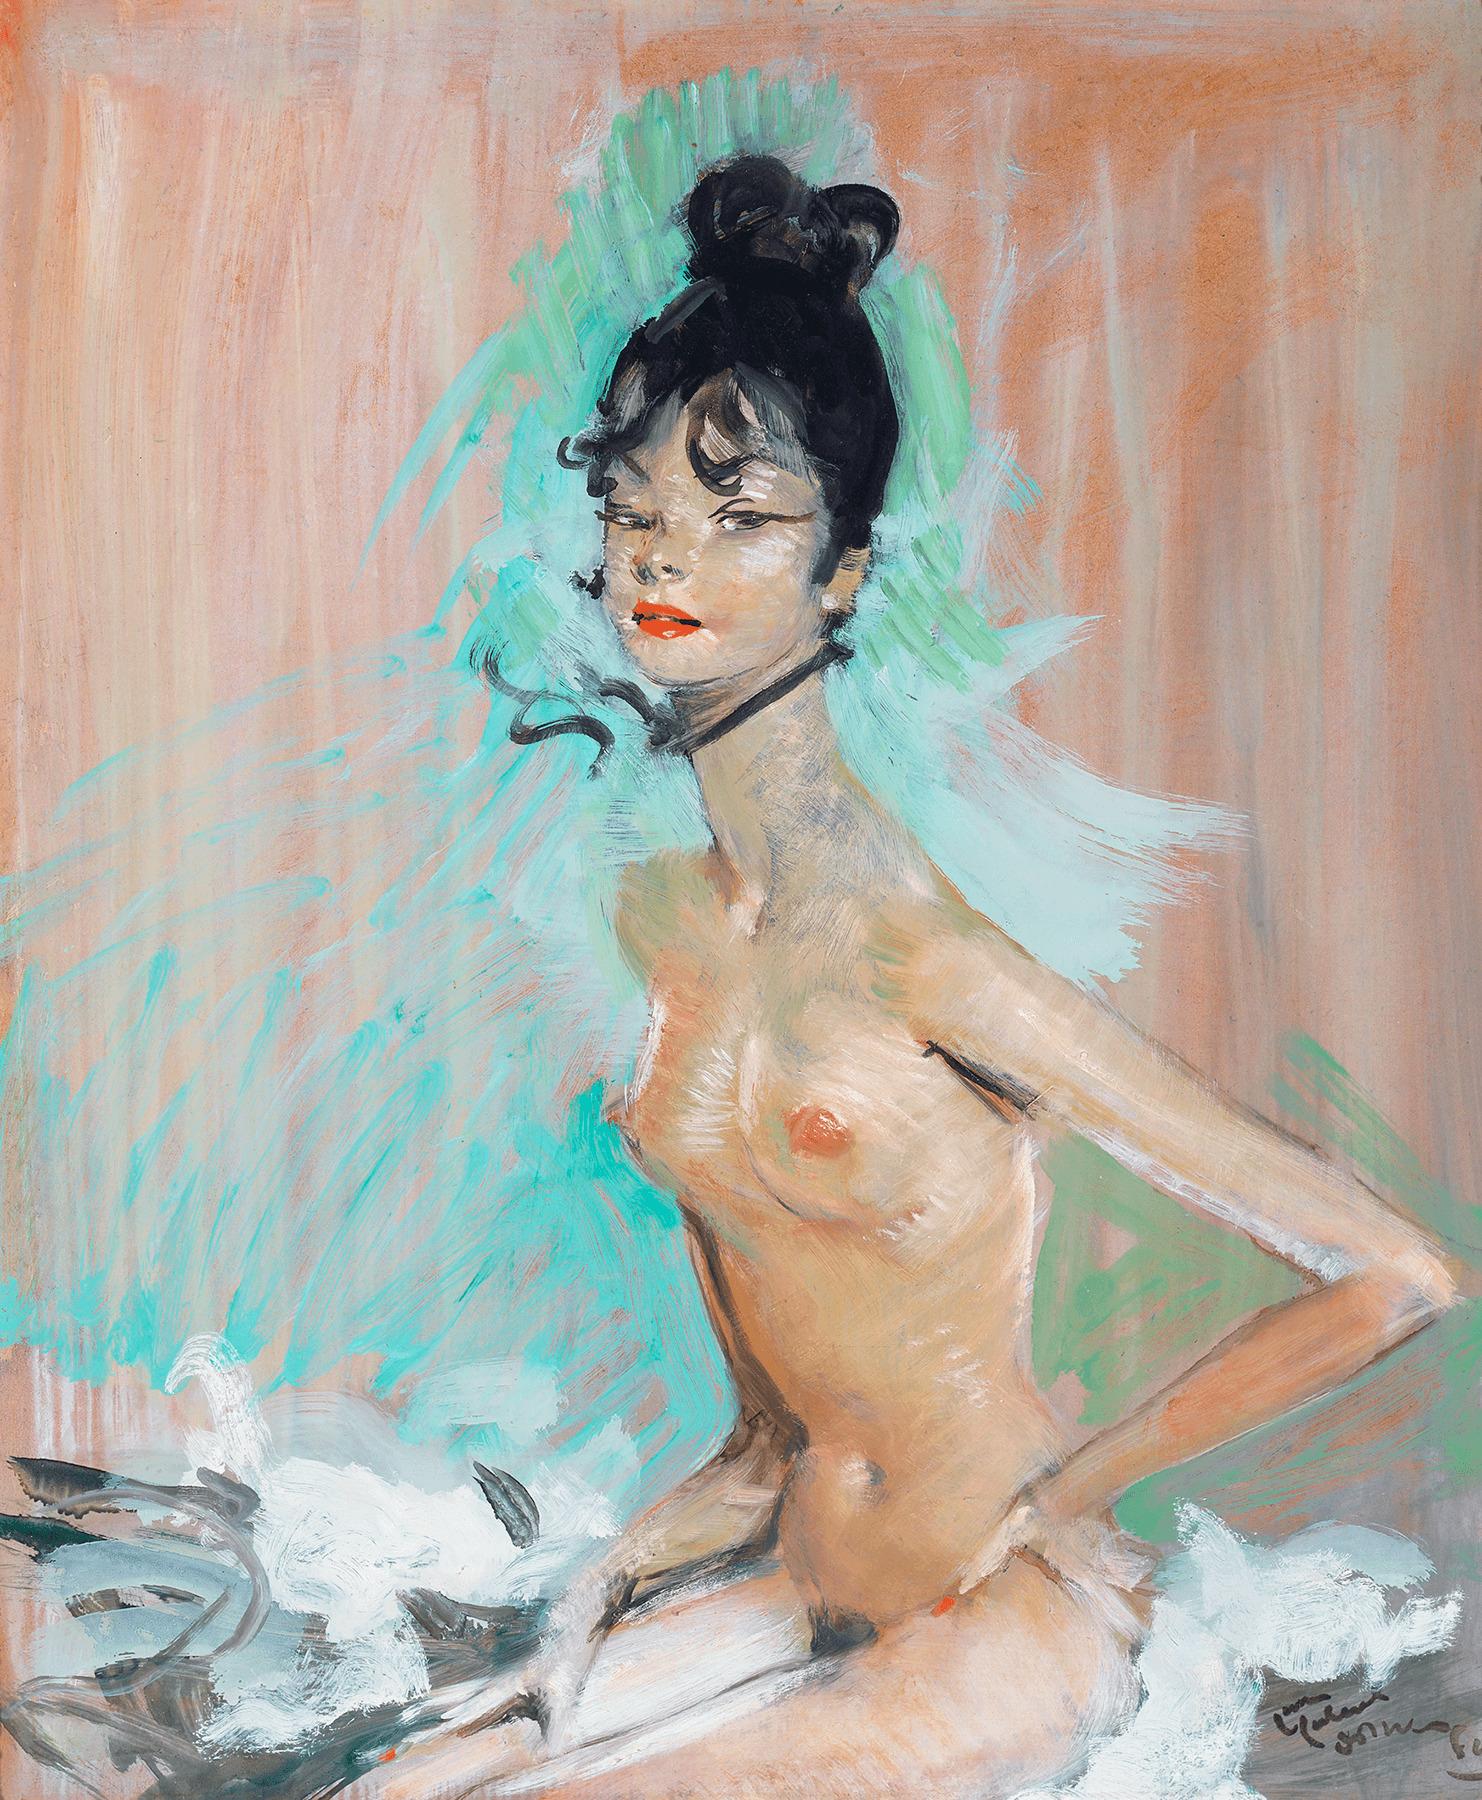 Jean-Gabriel Domergue Portrait Painting - Nude